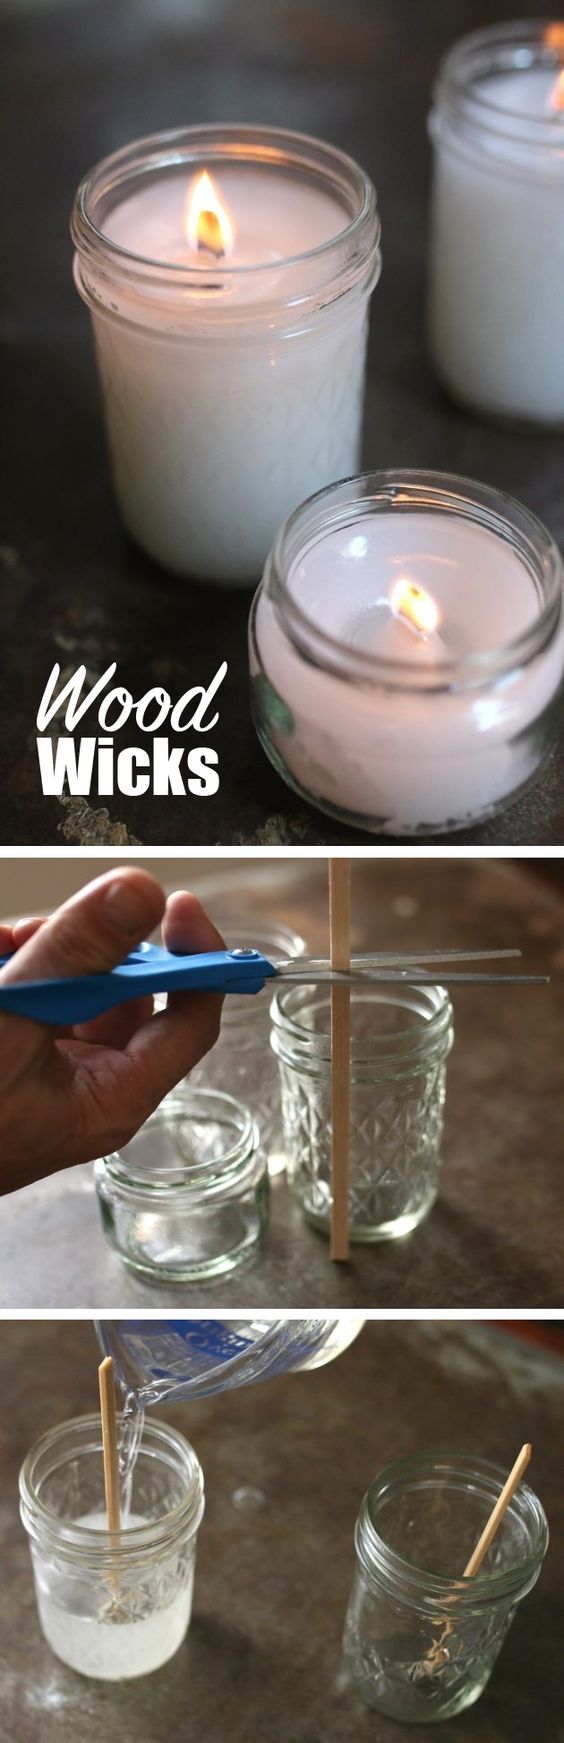 wood-wicks via